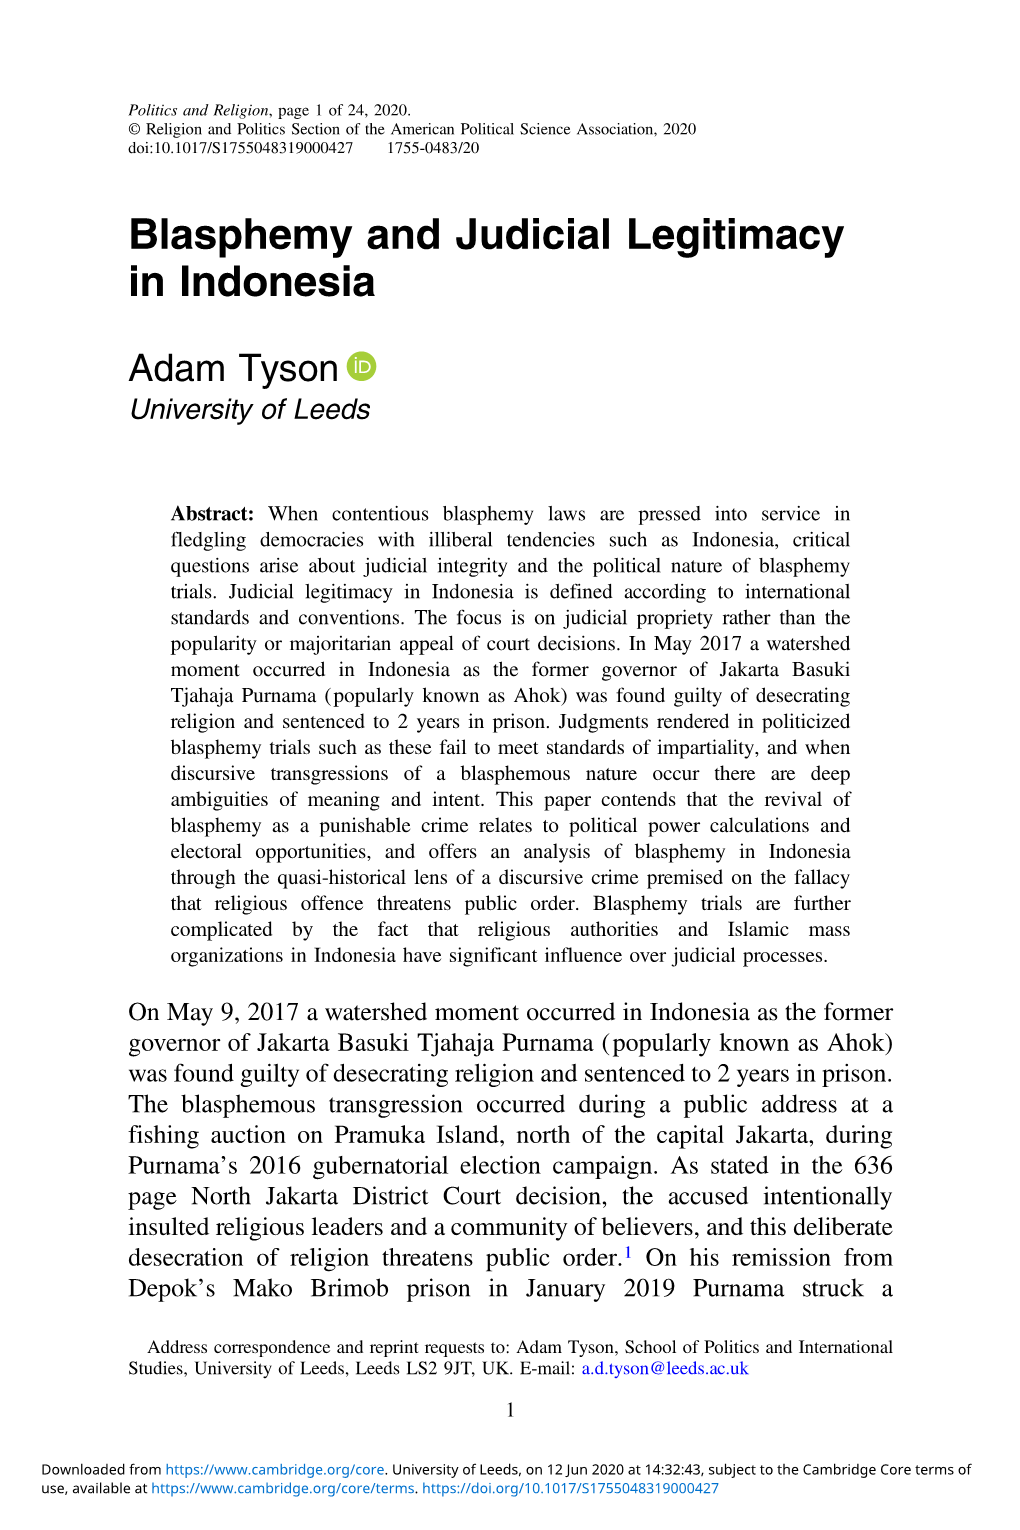 Blasphemy and Judicial Legitimacy in Indonesia